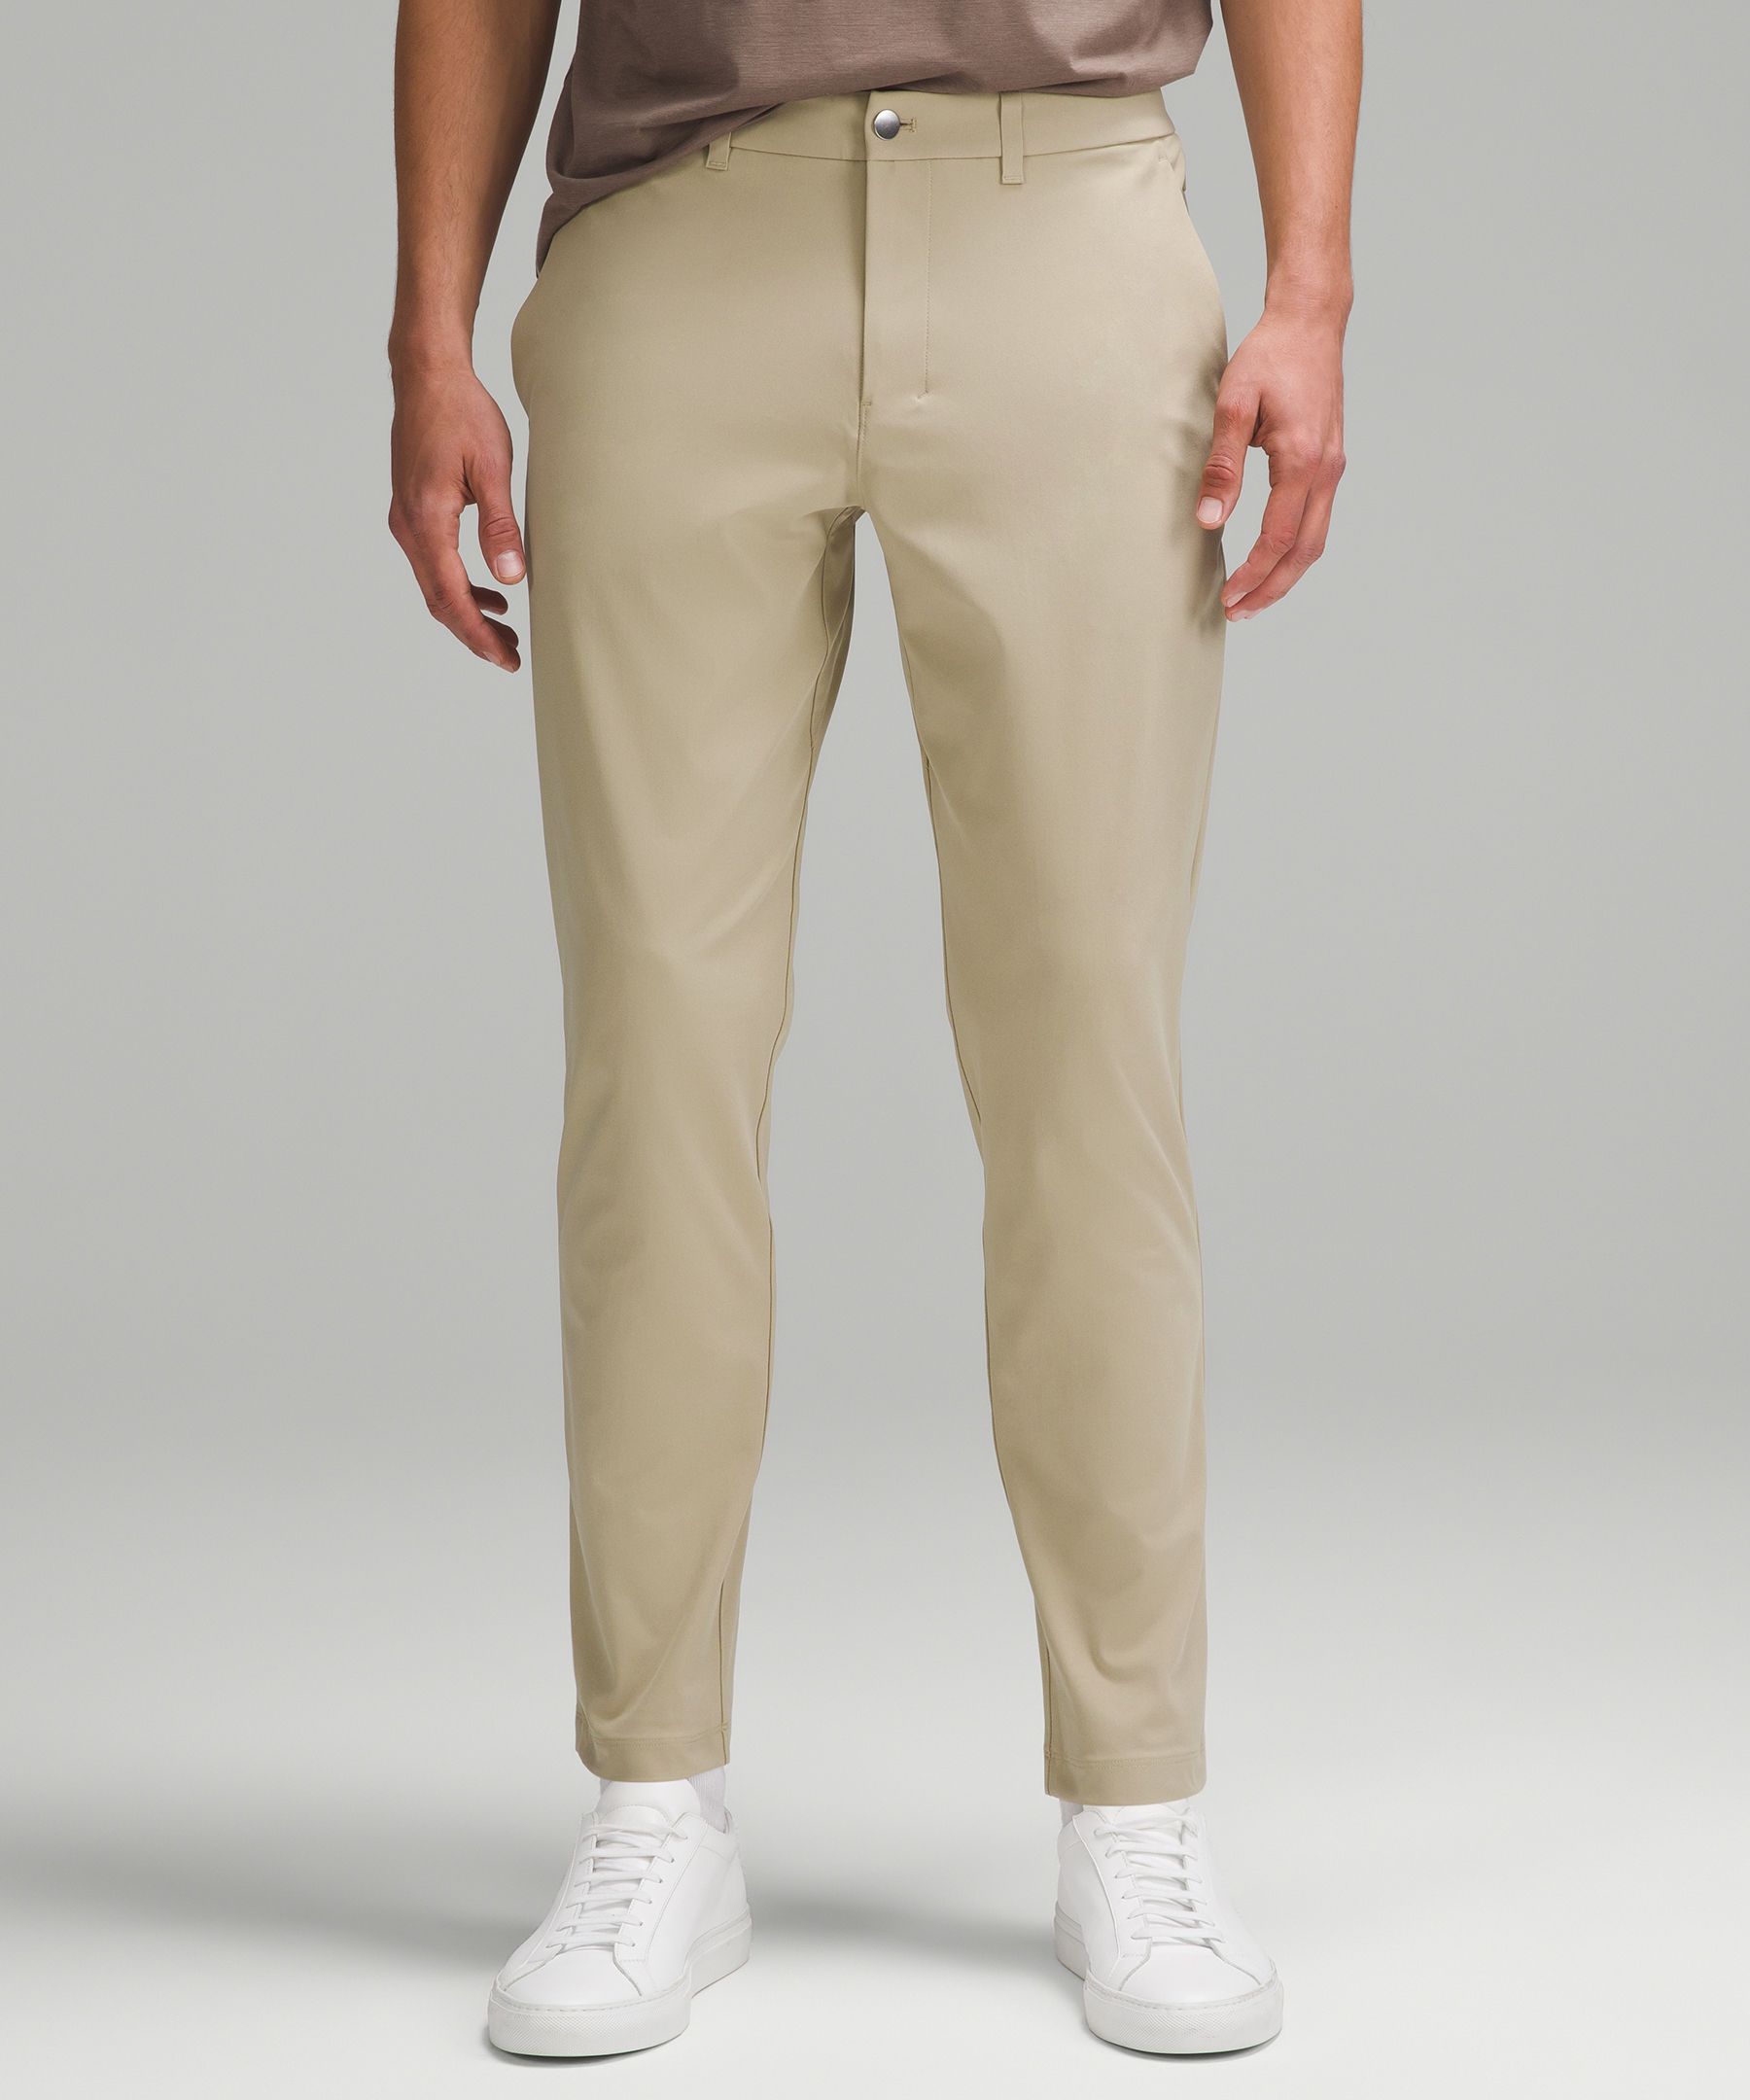 Lululemon Abc Slim-fit Trousers 32l Warpstreme